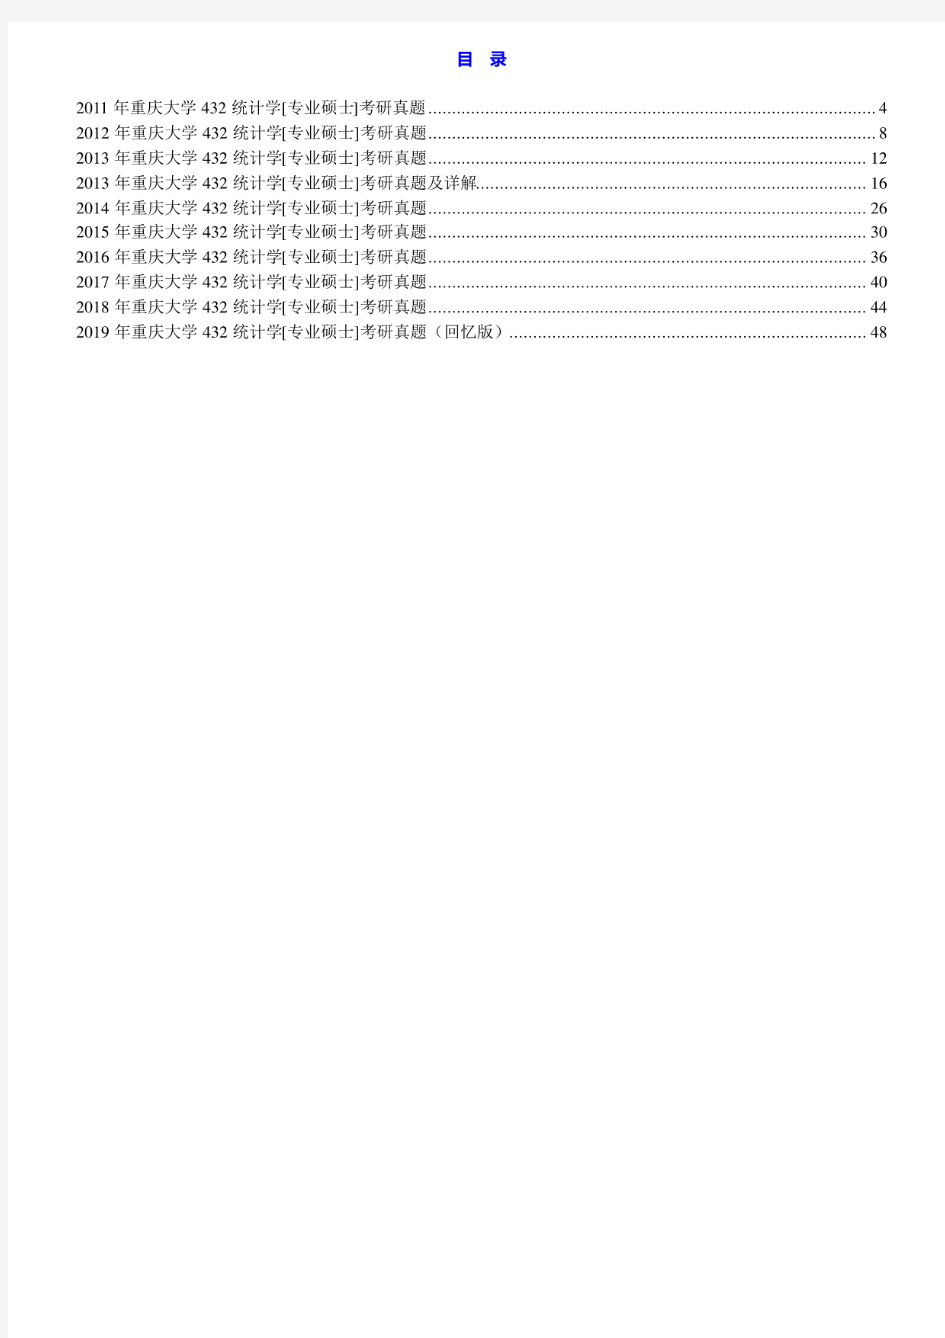 重庆大学432统计学11-19年(19年回忆版)真题